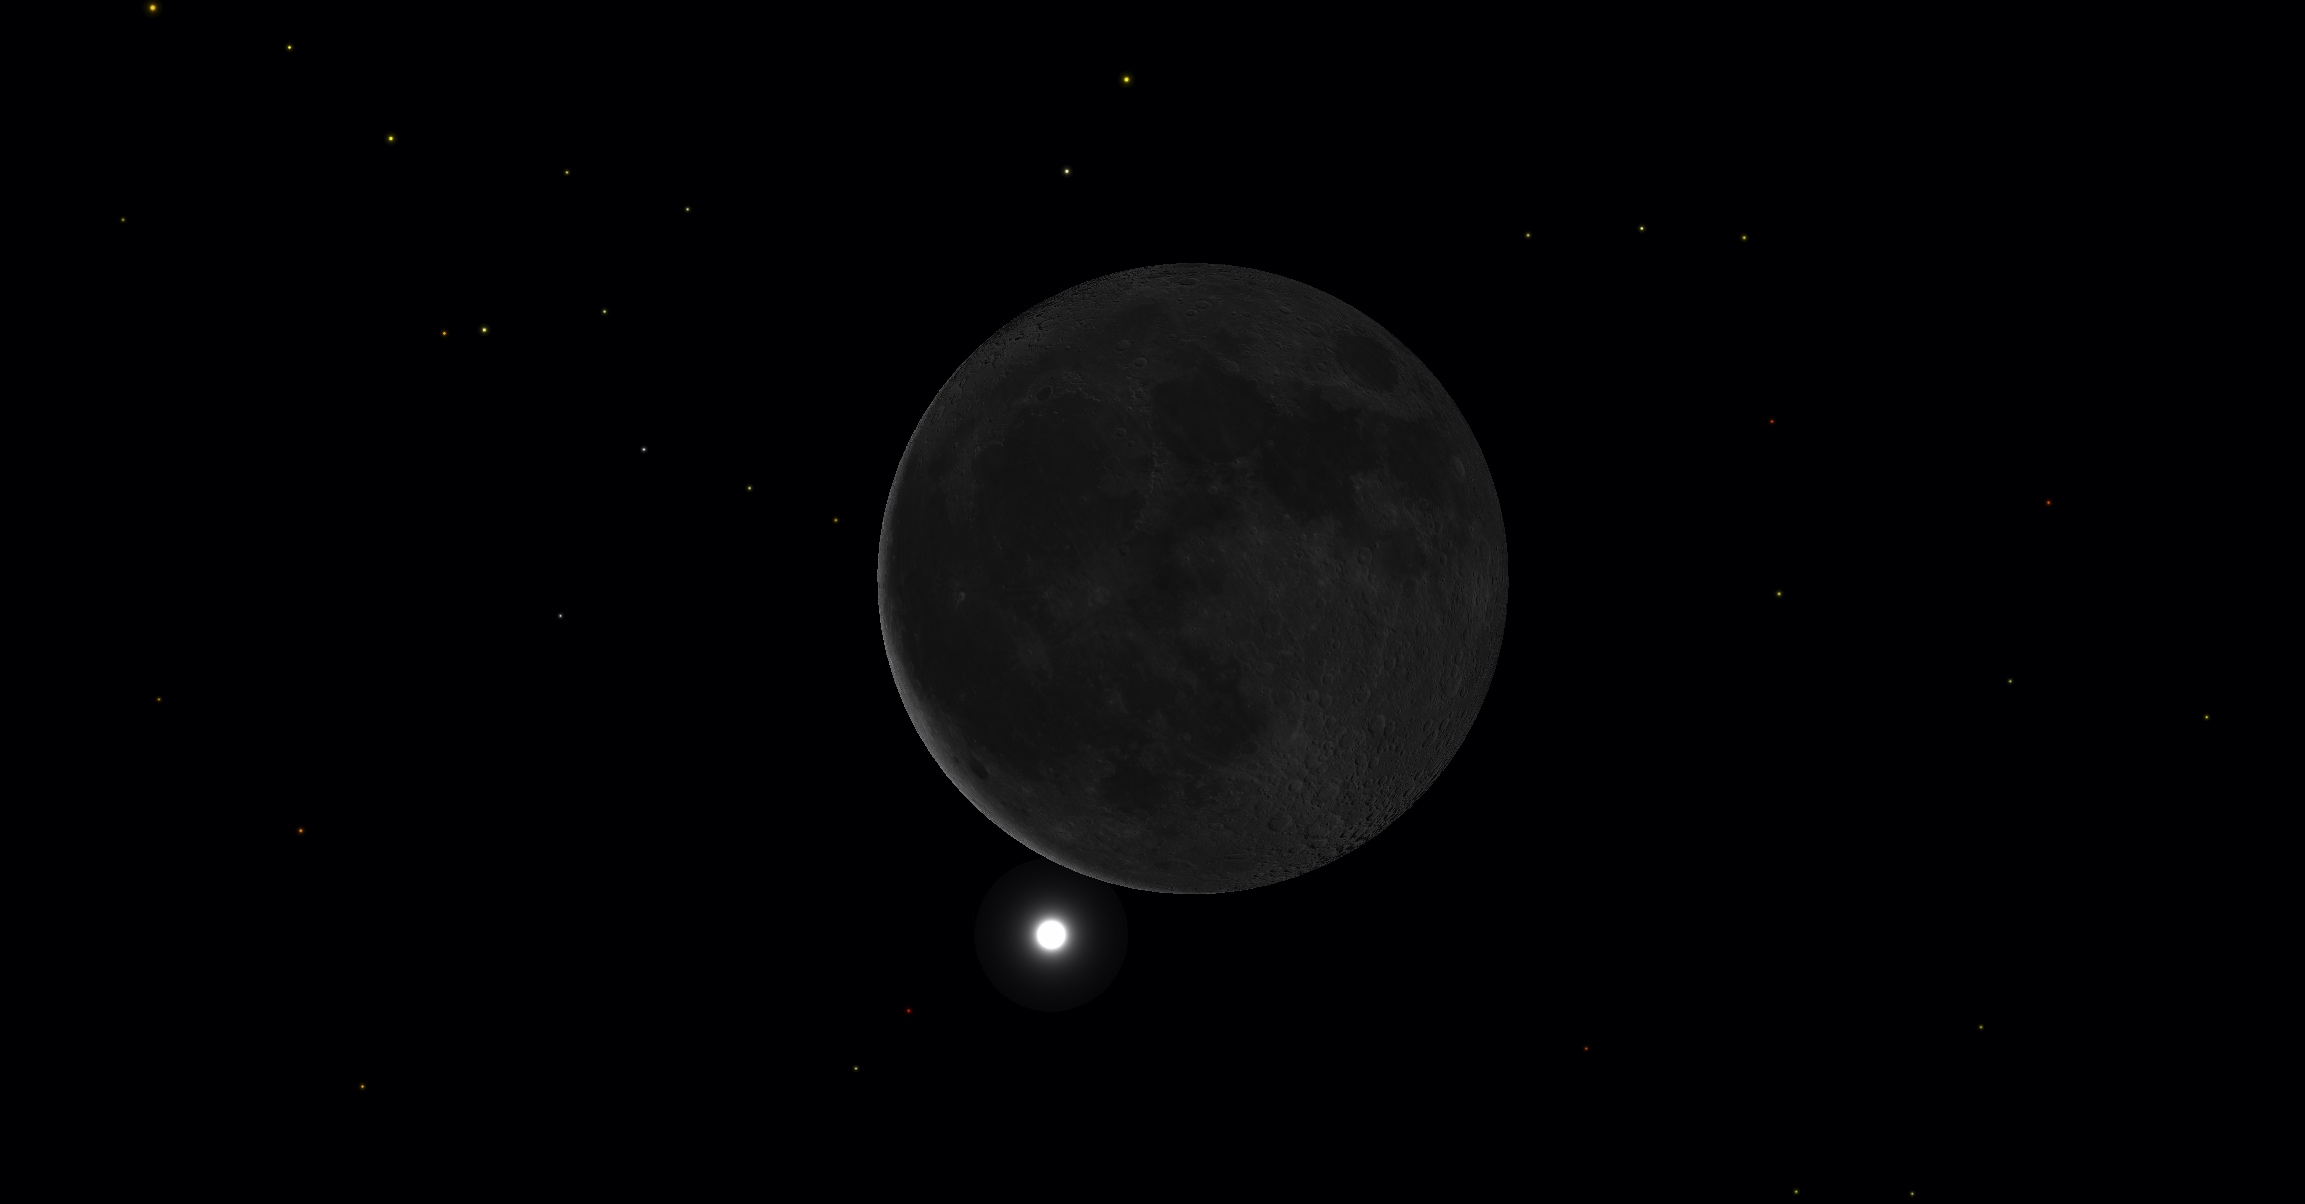 Capture d'écran montrant la Lune en conjonction avec Vénus, quelques instants avant l'occultation de la déesse de l'Amour par notre plus proche voisine, la Lune. © SkySafari